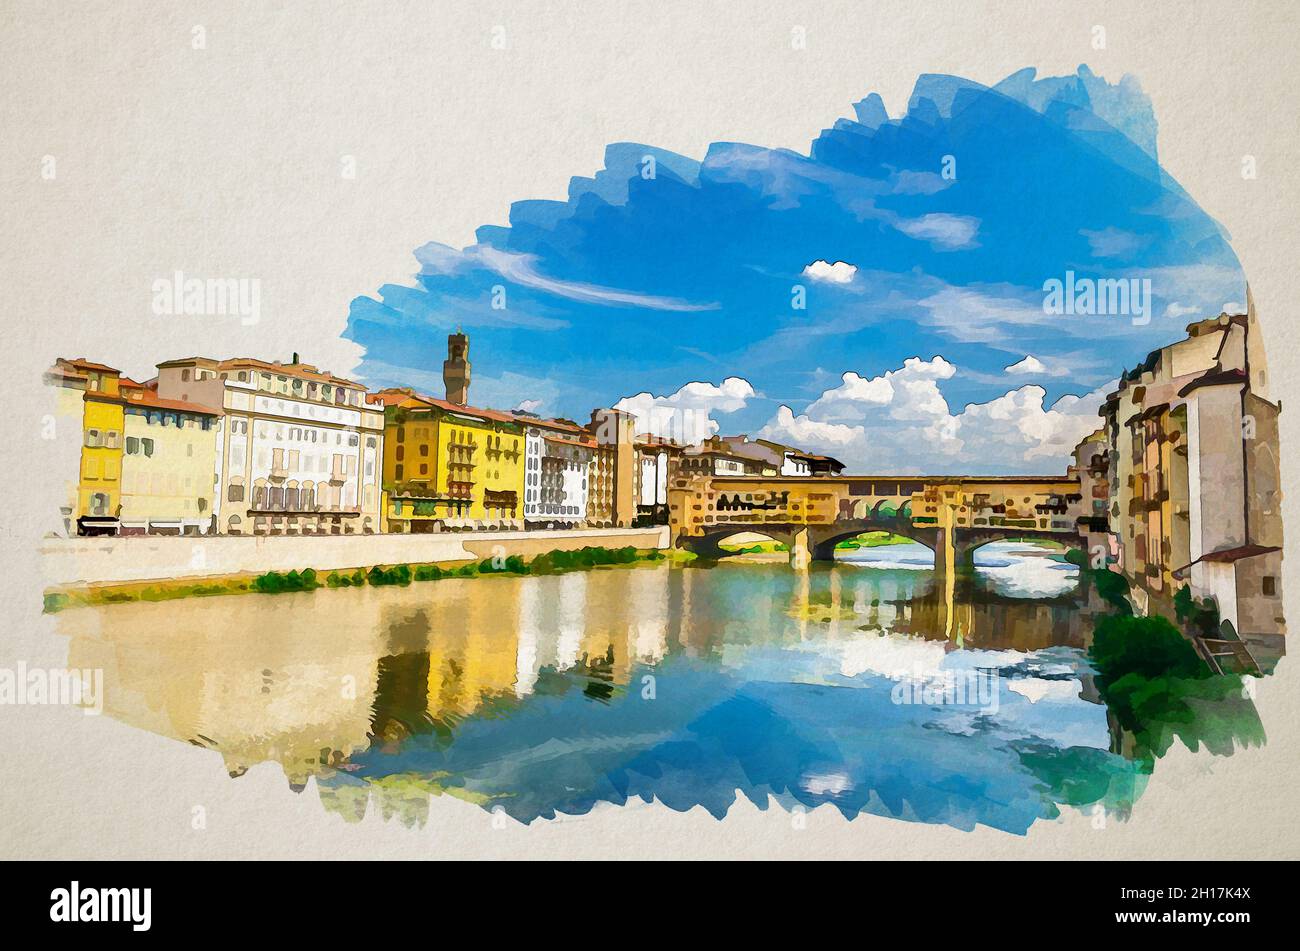 Ponte Vecchio art print Italy wall art Florence Italy print Italy watercolor Tuscany Ponte Vecchio painting River Arno Italy art Tuscany art